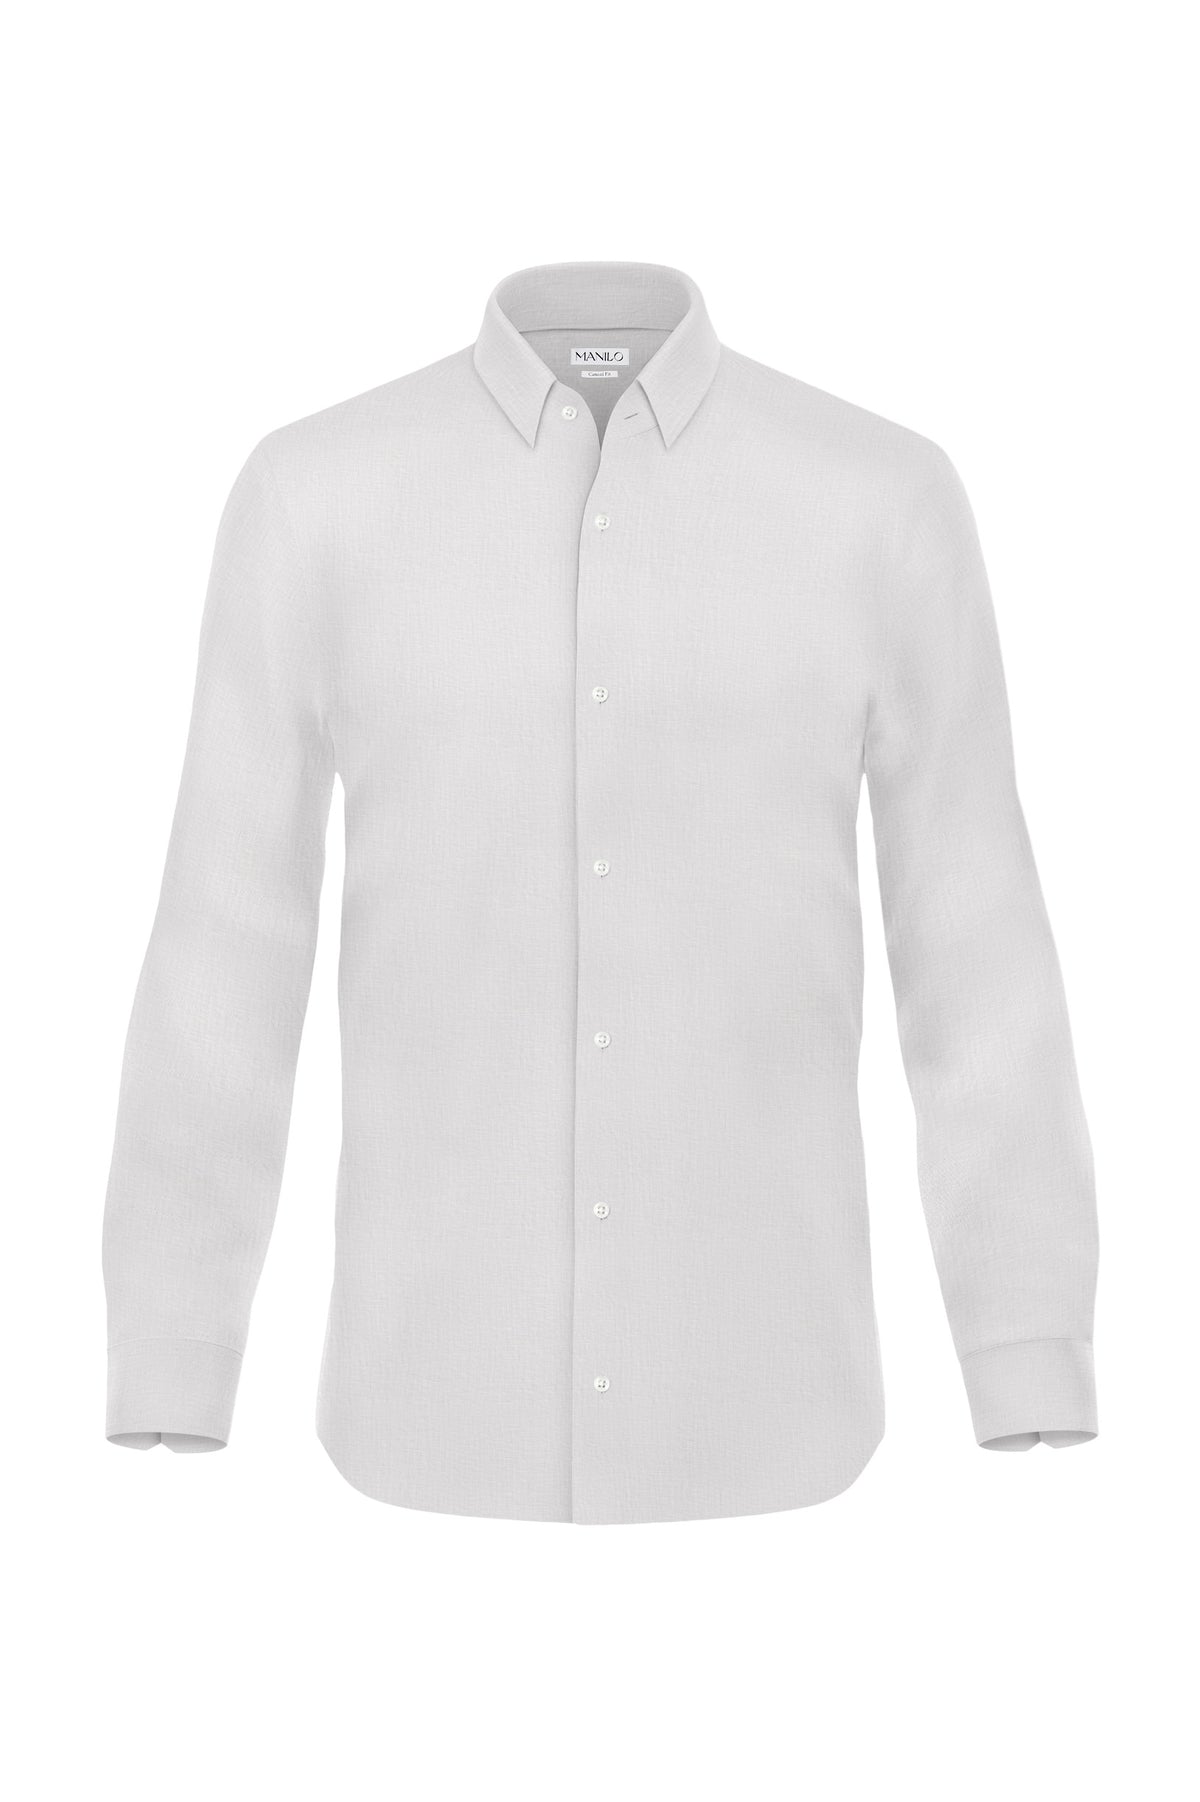 Linen shirt in white (Art. 2267-C)